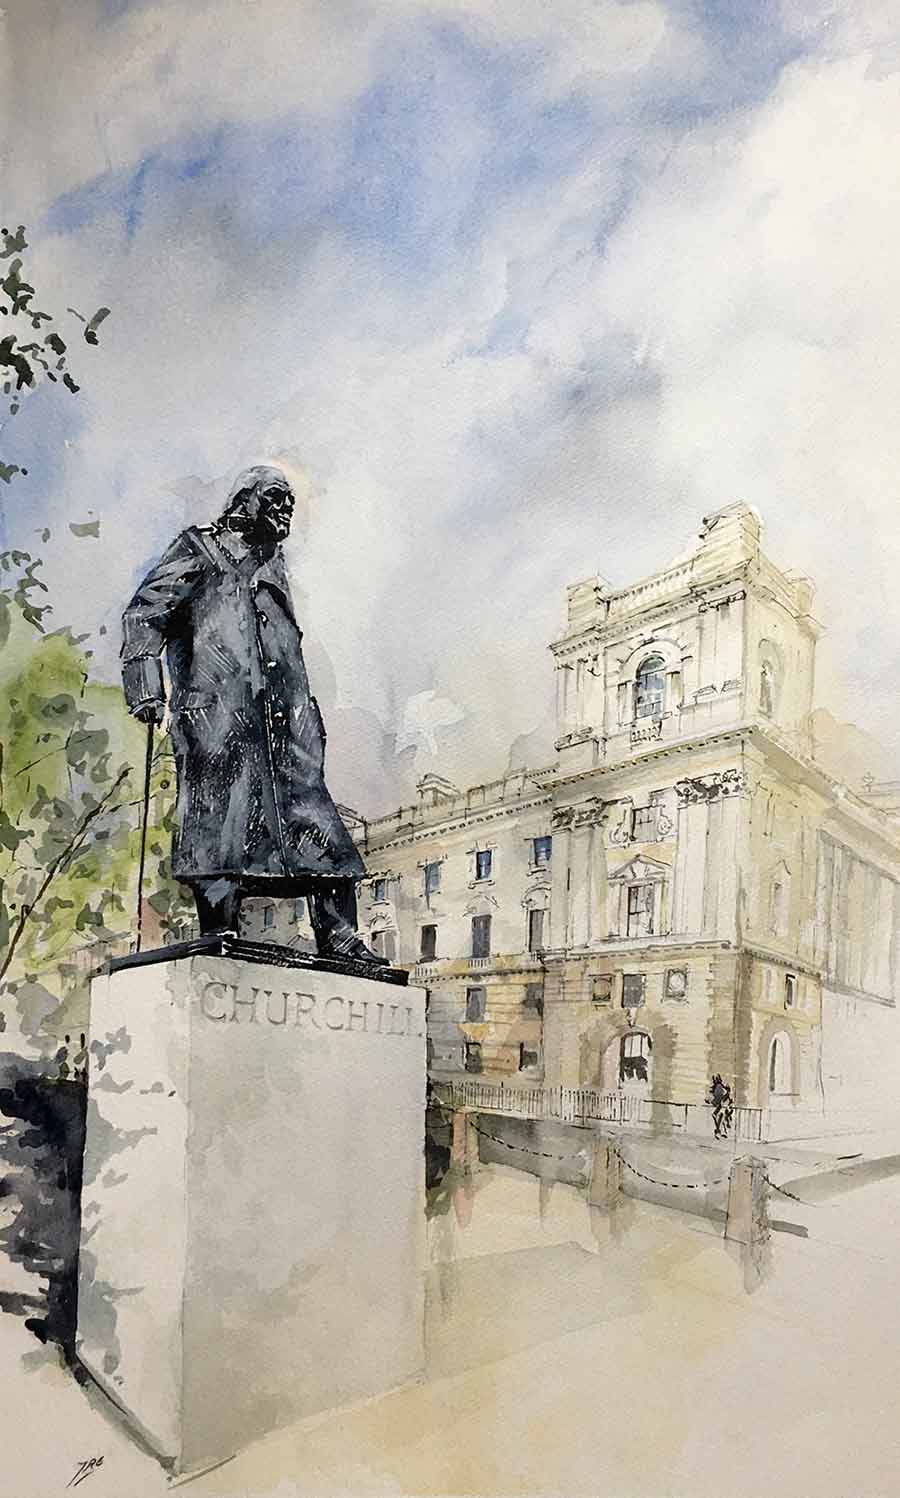 Watercolour of Churchill in Parliament Square in London